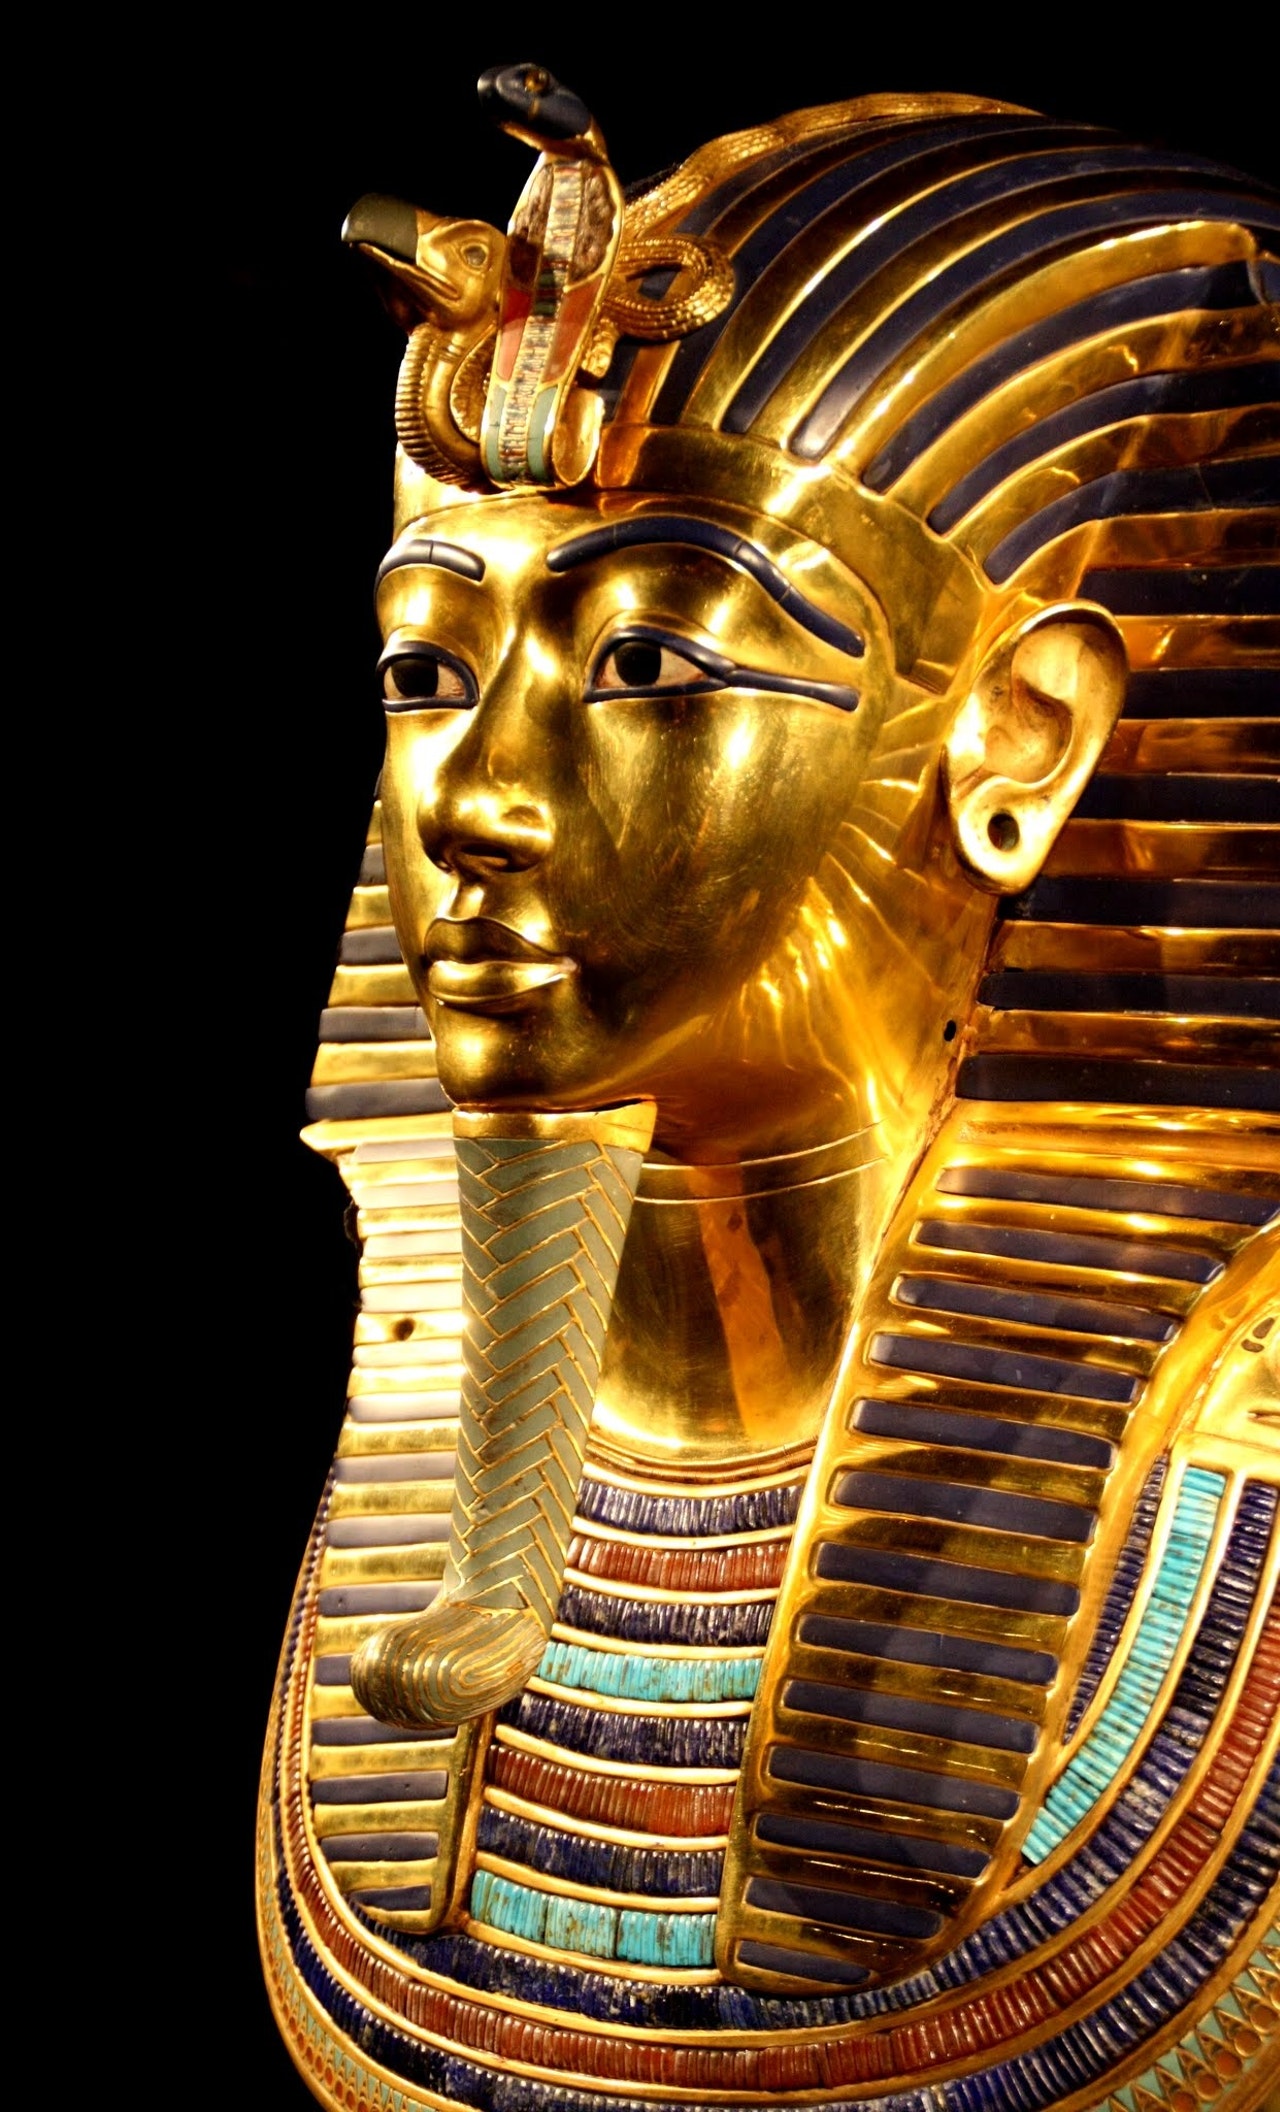 Єгипет відкрив перший завод археологічних копій на Близькому Сході